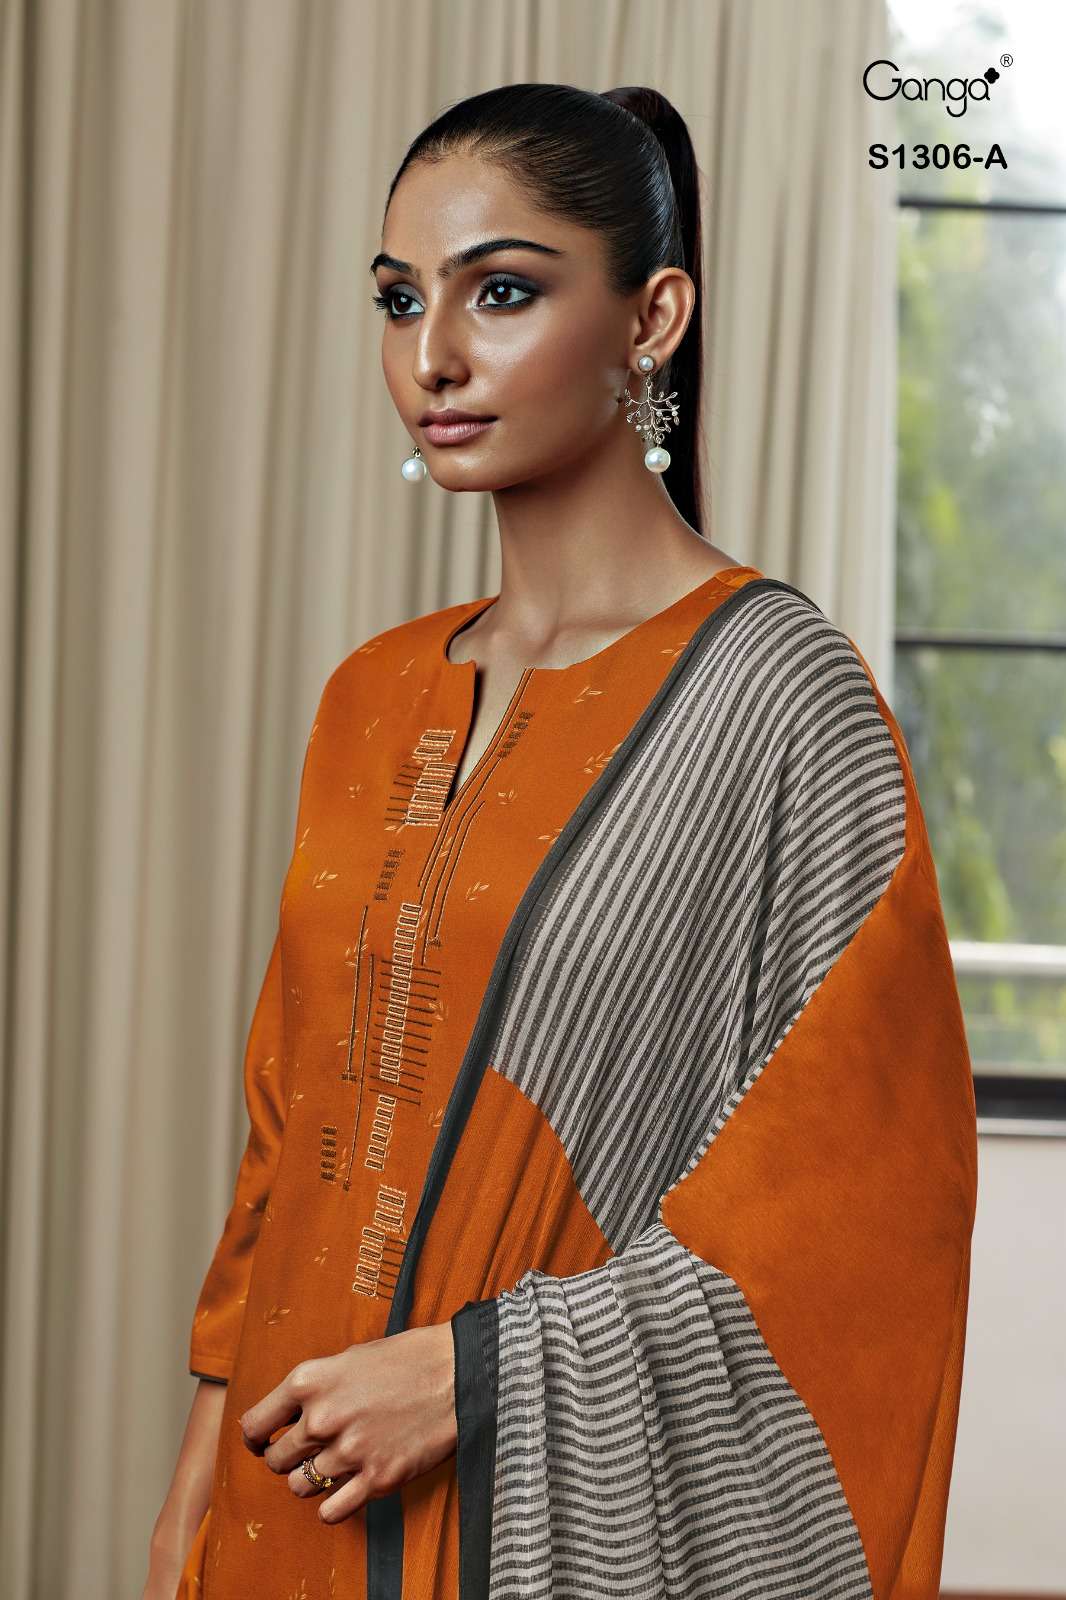 ganga inna 1306 series premium cotton satin with work designer salwar suits catalogue wholesaler surat